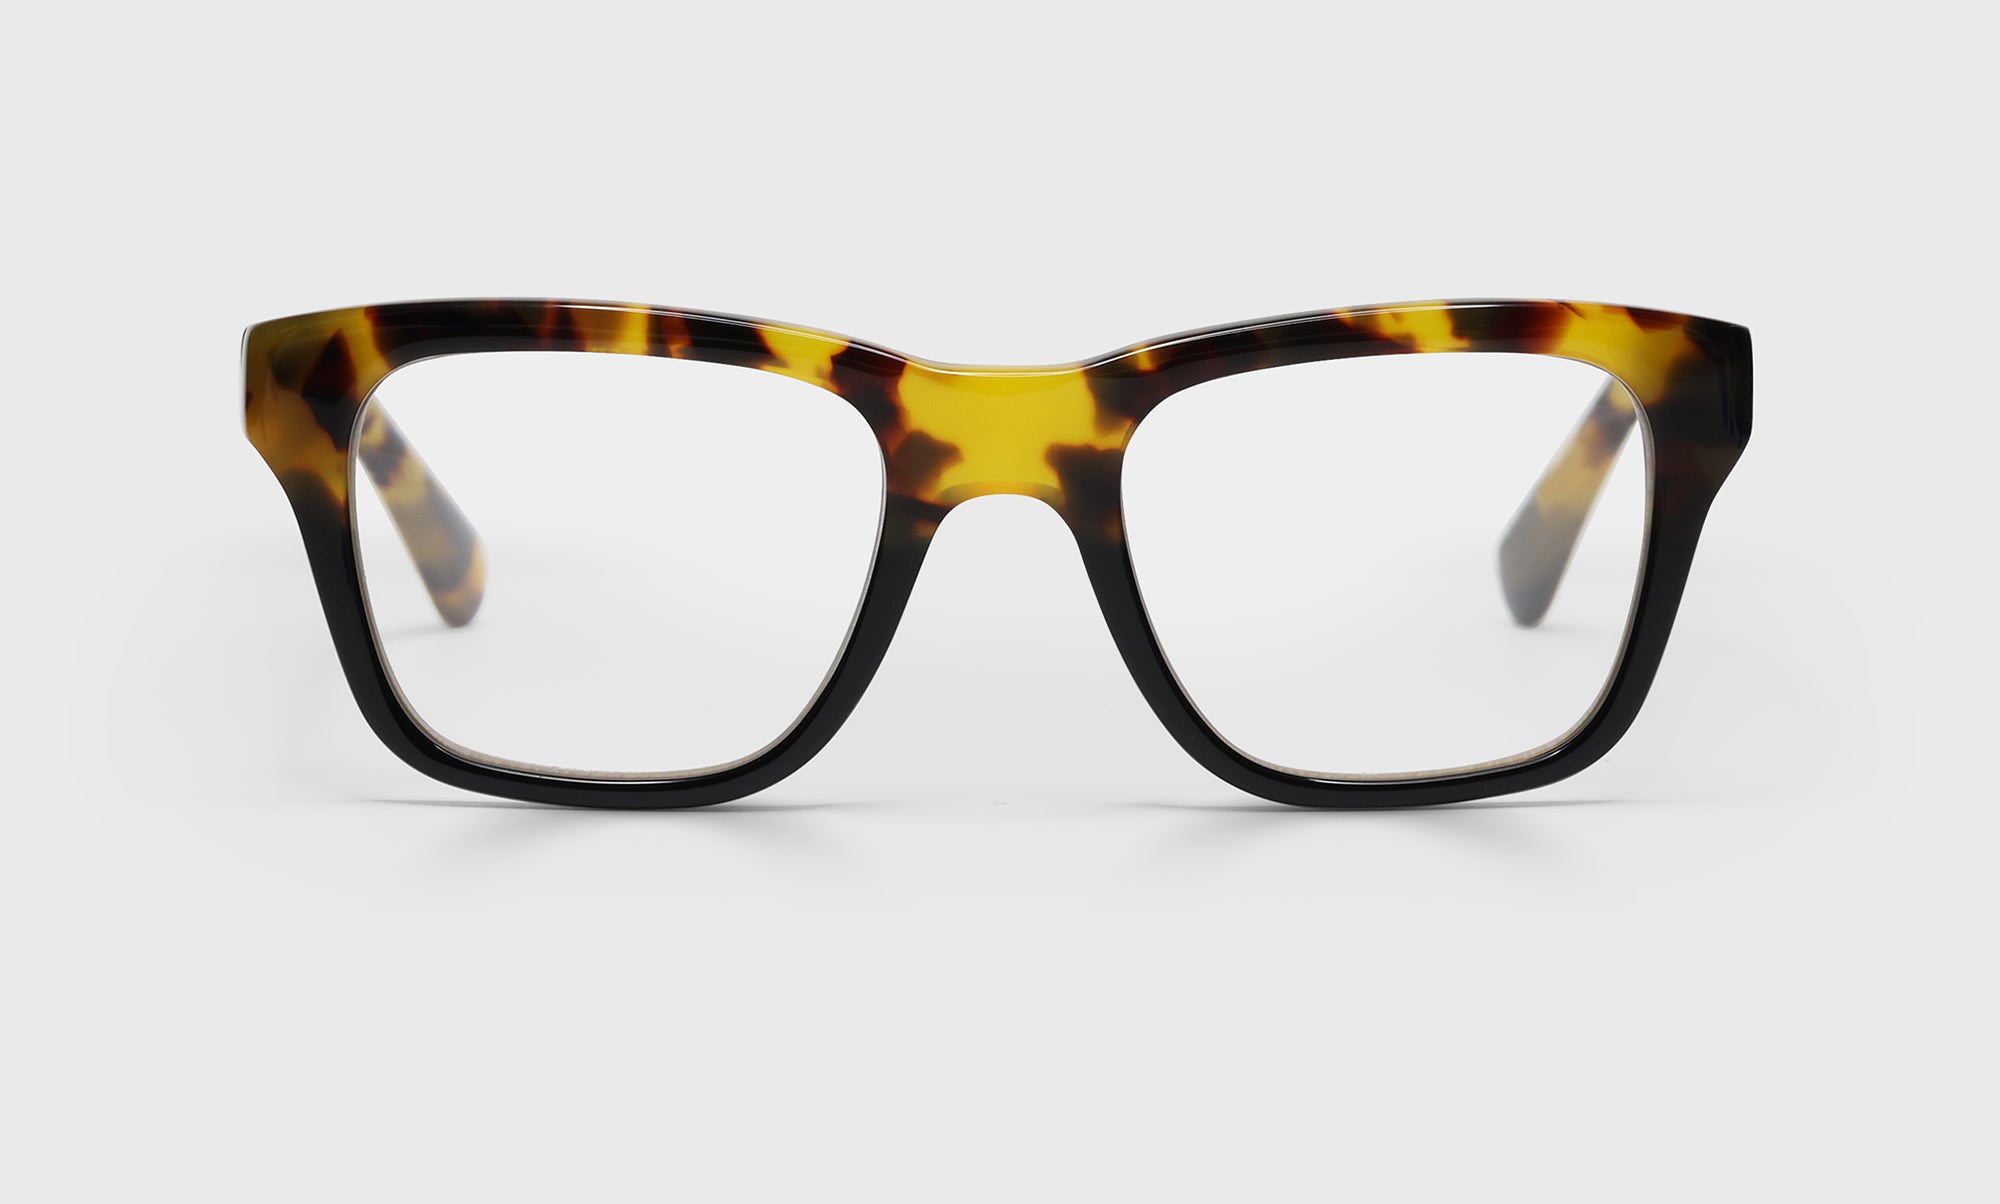 19_eyebobs premium designer kvetcher readers, blue light and prescription glasses in tortoise & black